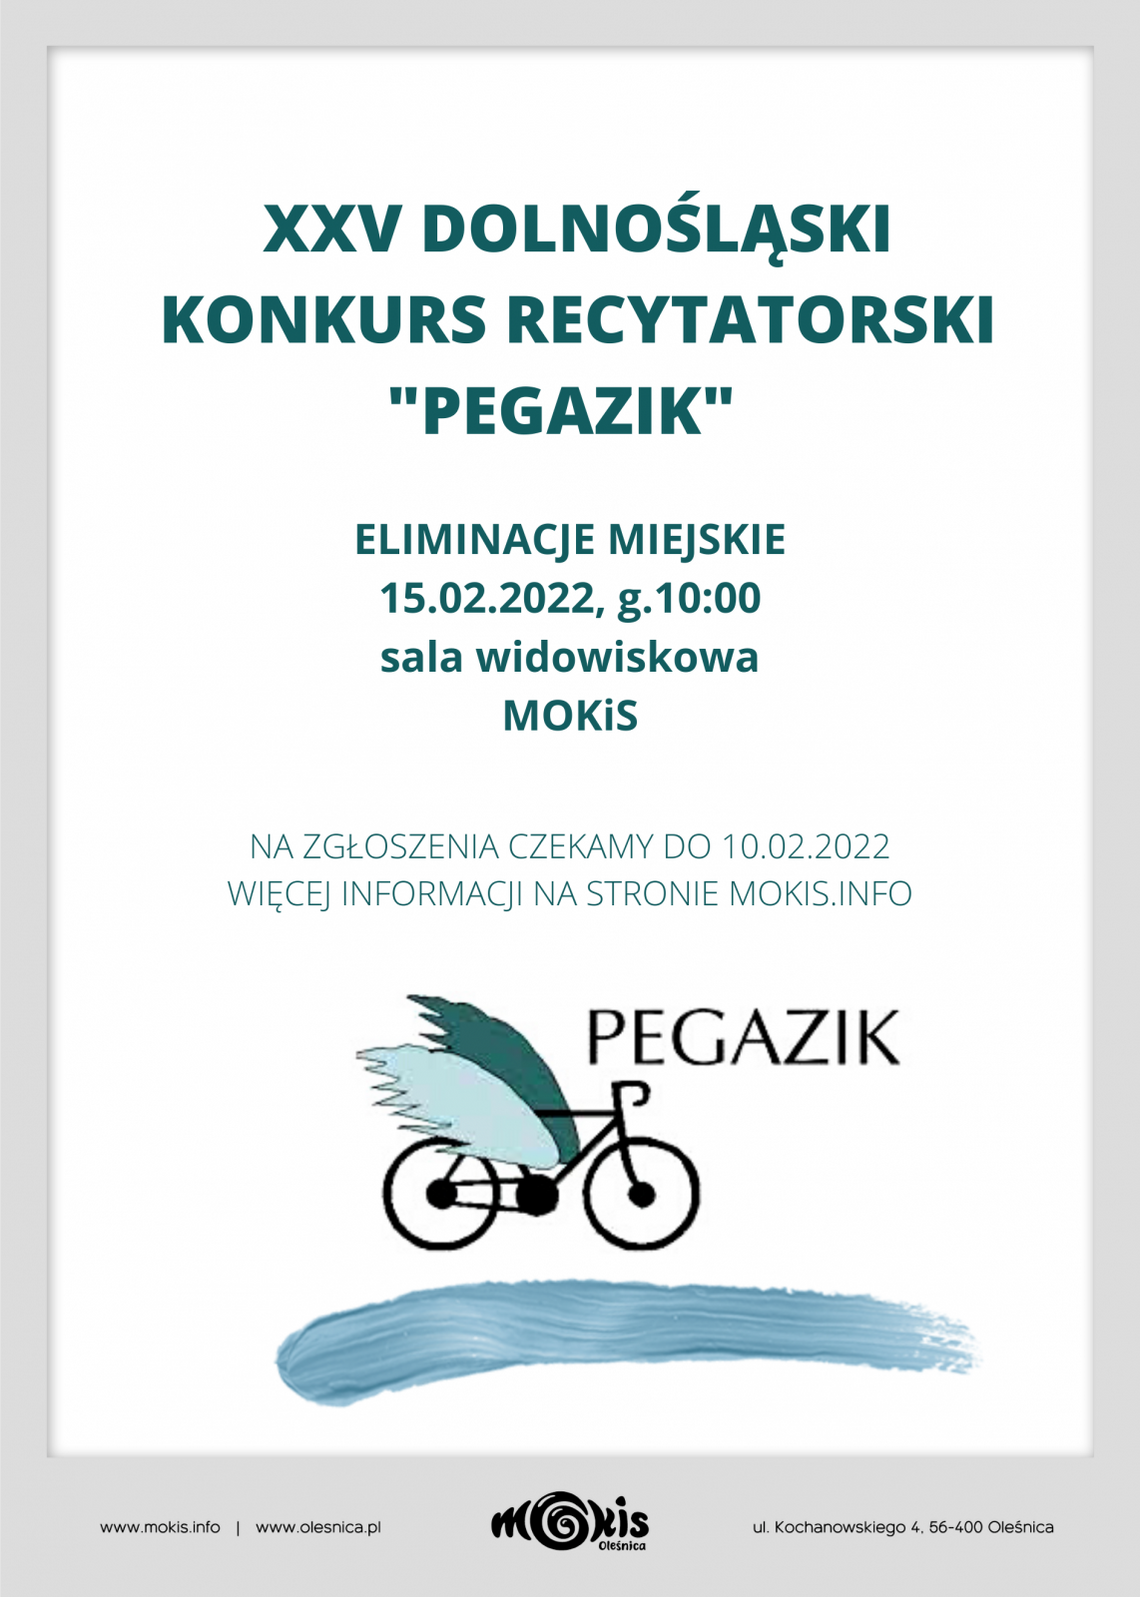 Zgłoszenia na XXV Dolnośląski Konkurs Recytatorski Pegazik w Oleśnicy